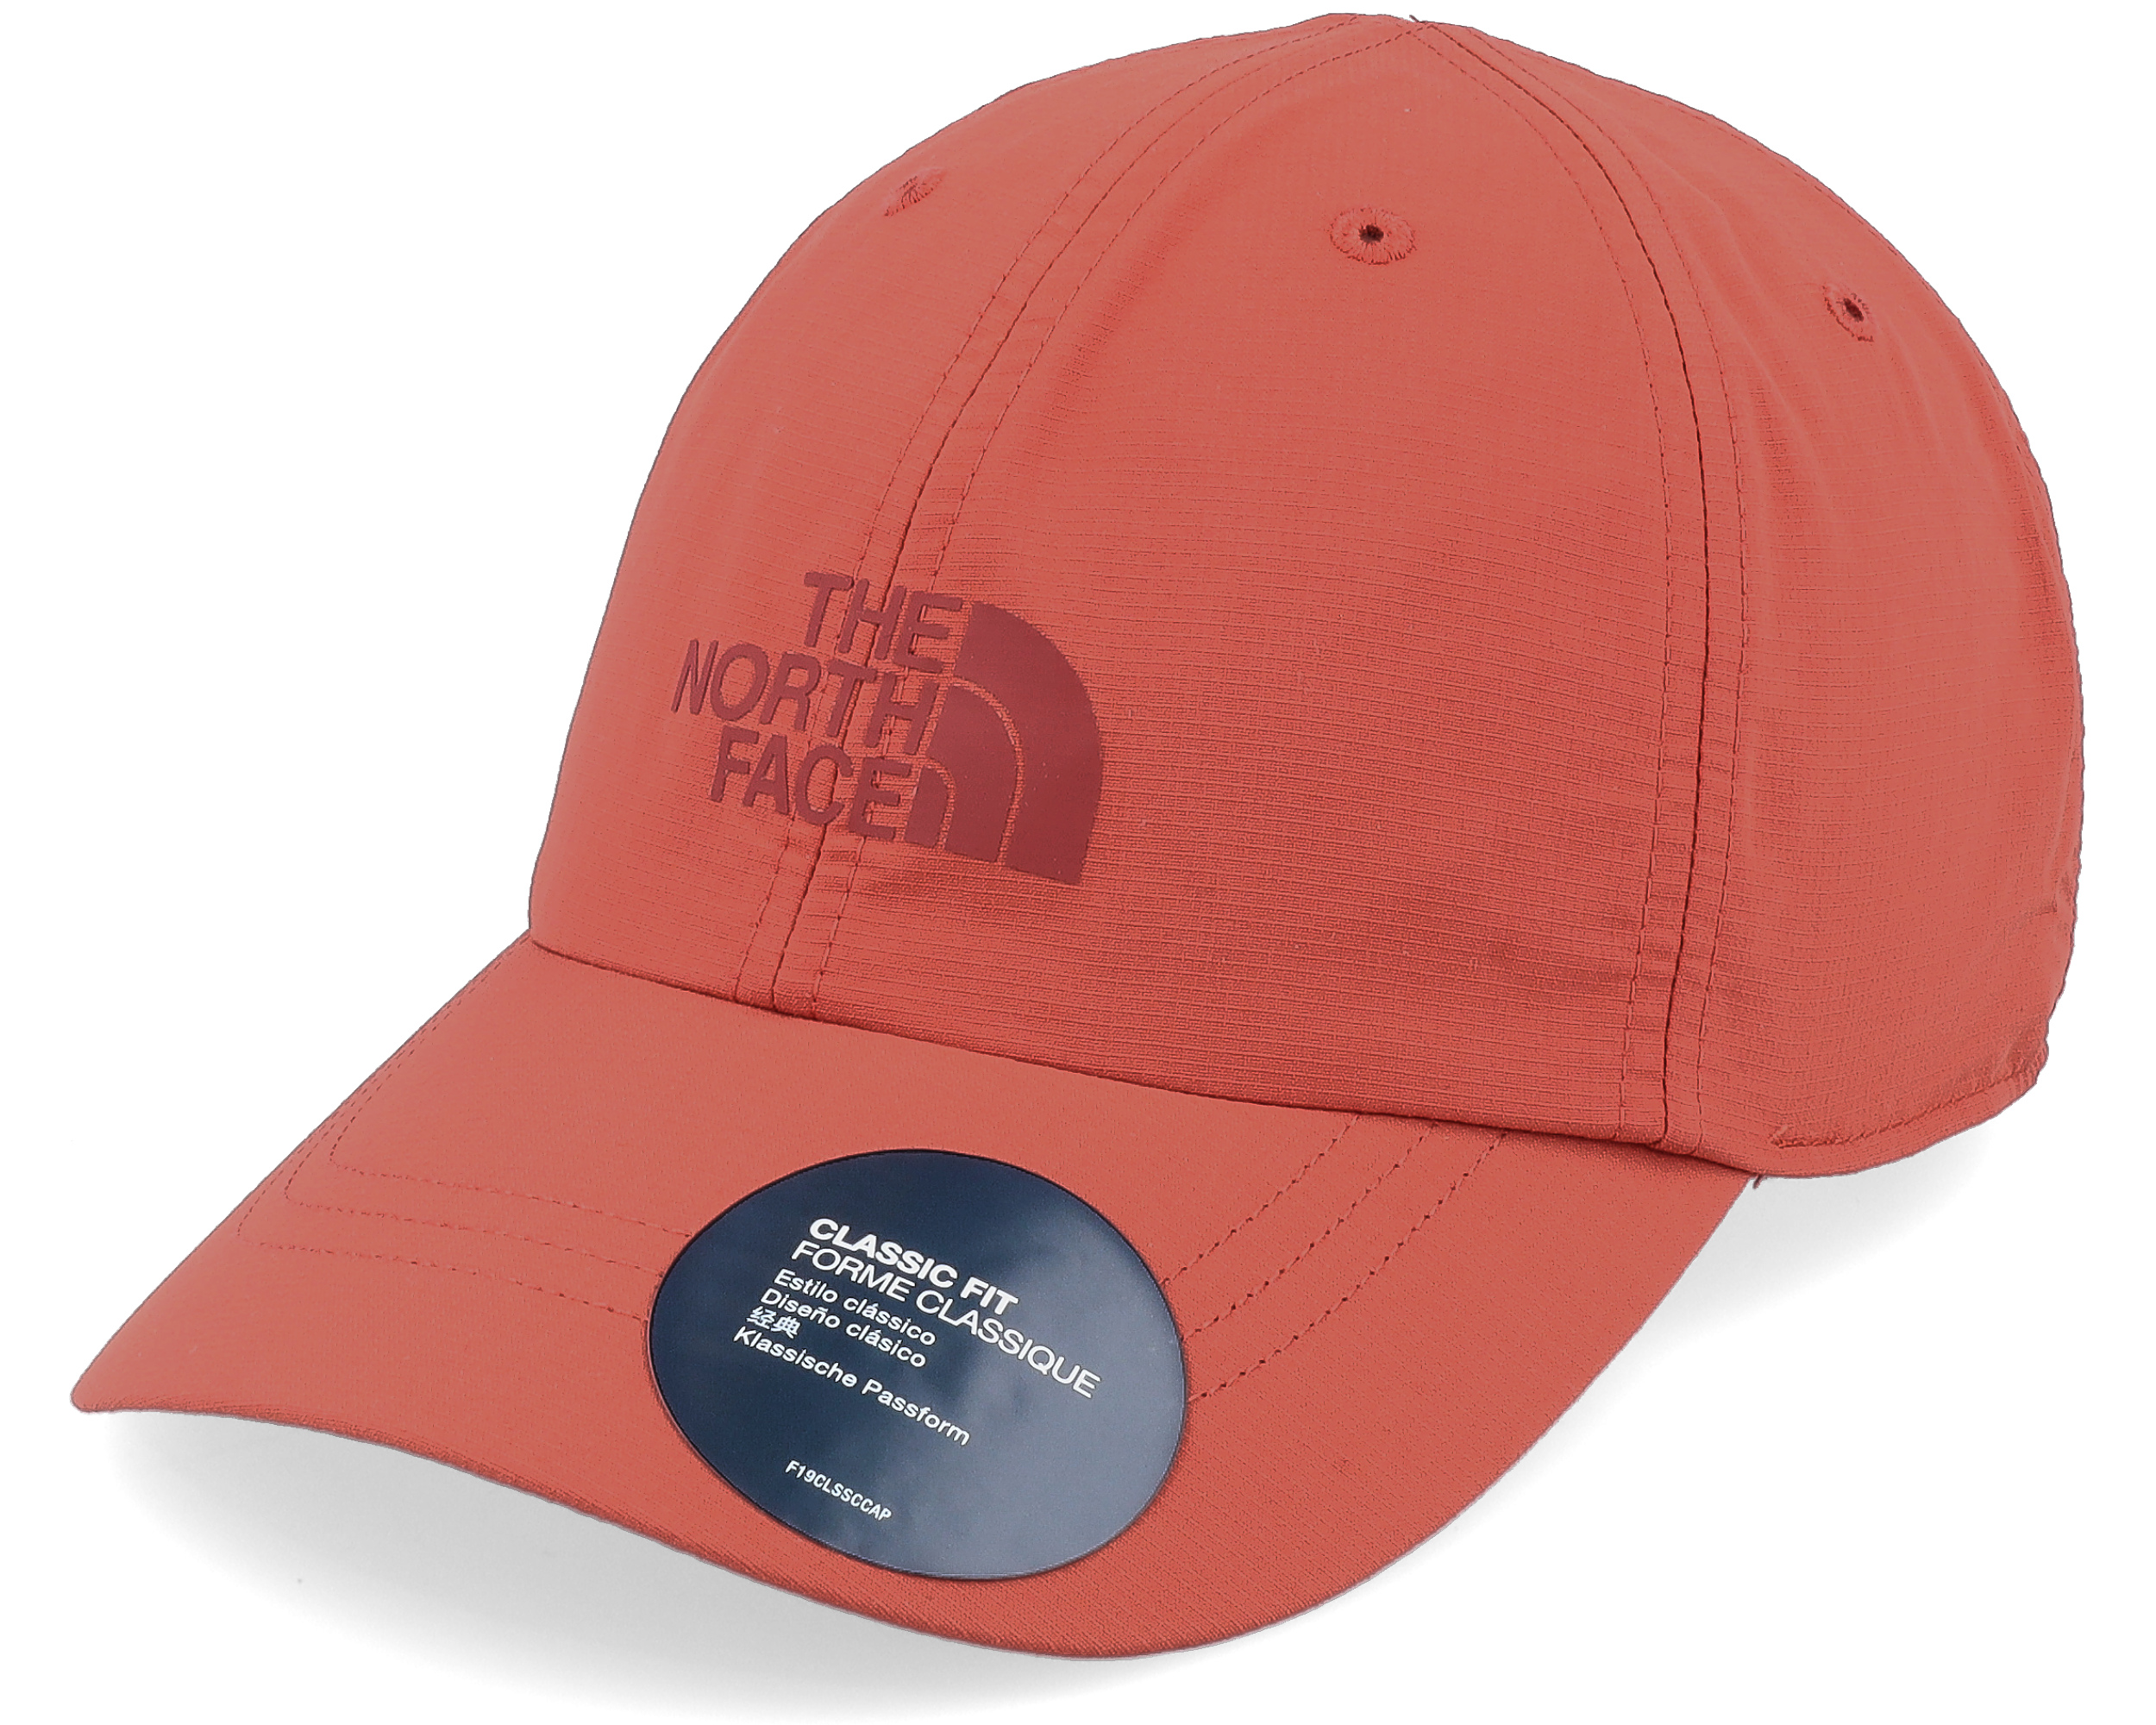 The North Face Caps & Hats - Shop Online - hatstore.com.hk 